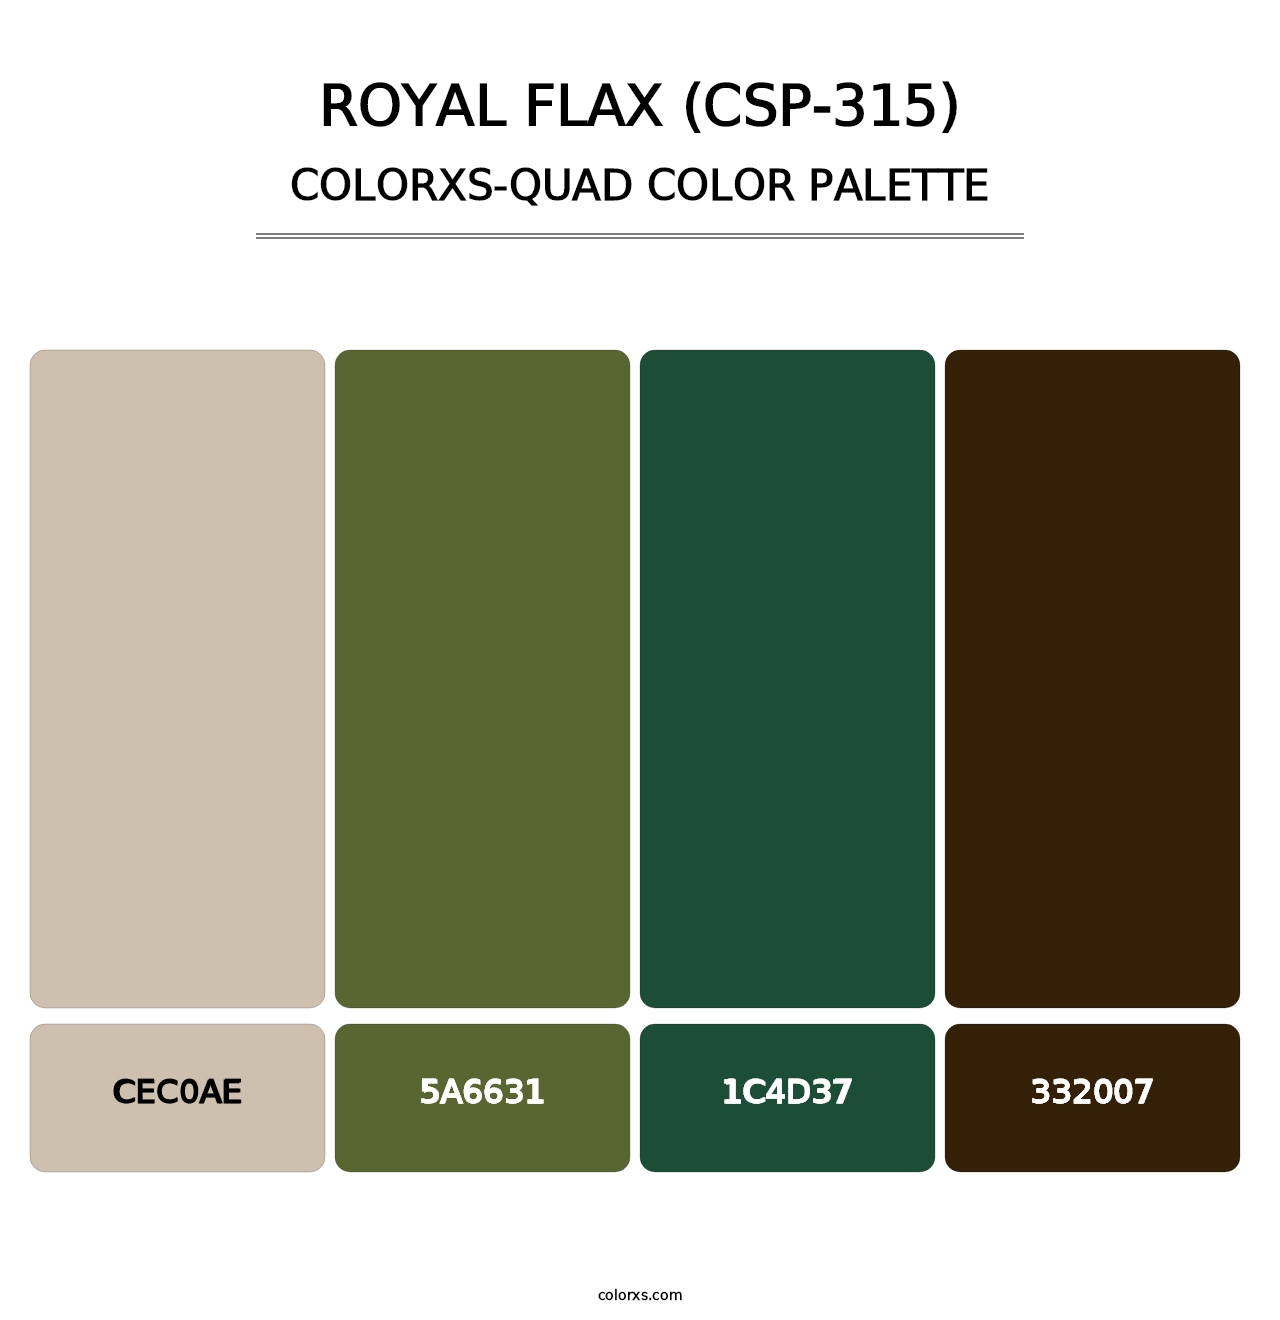 Royal Flax (CSP-315) - Colorxs Quad Palette